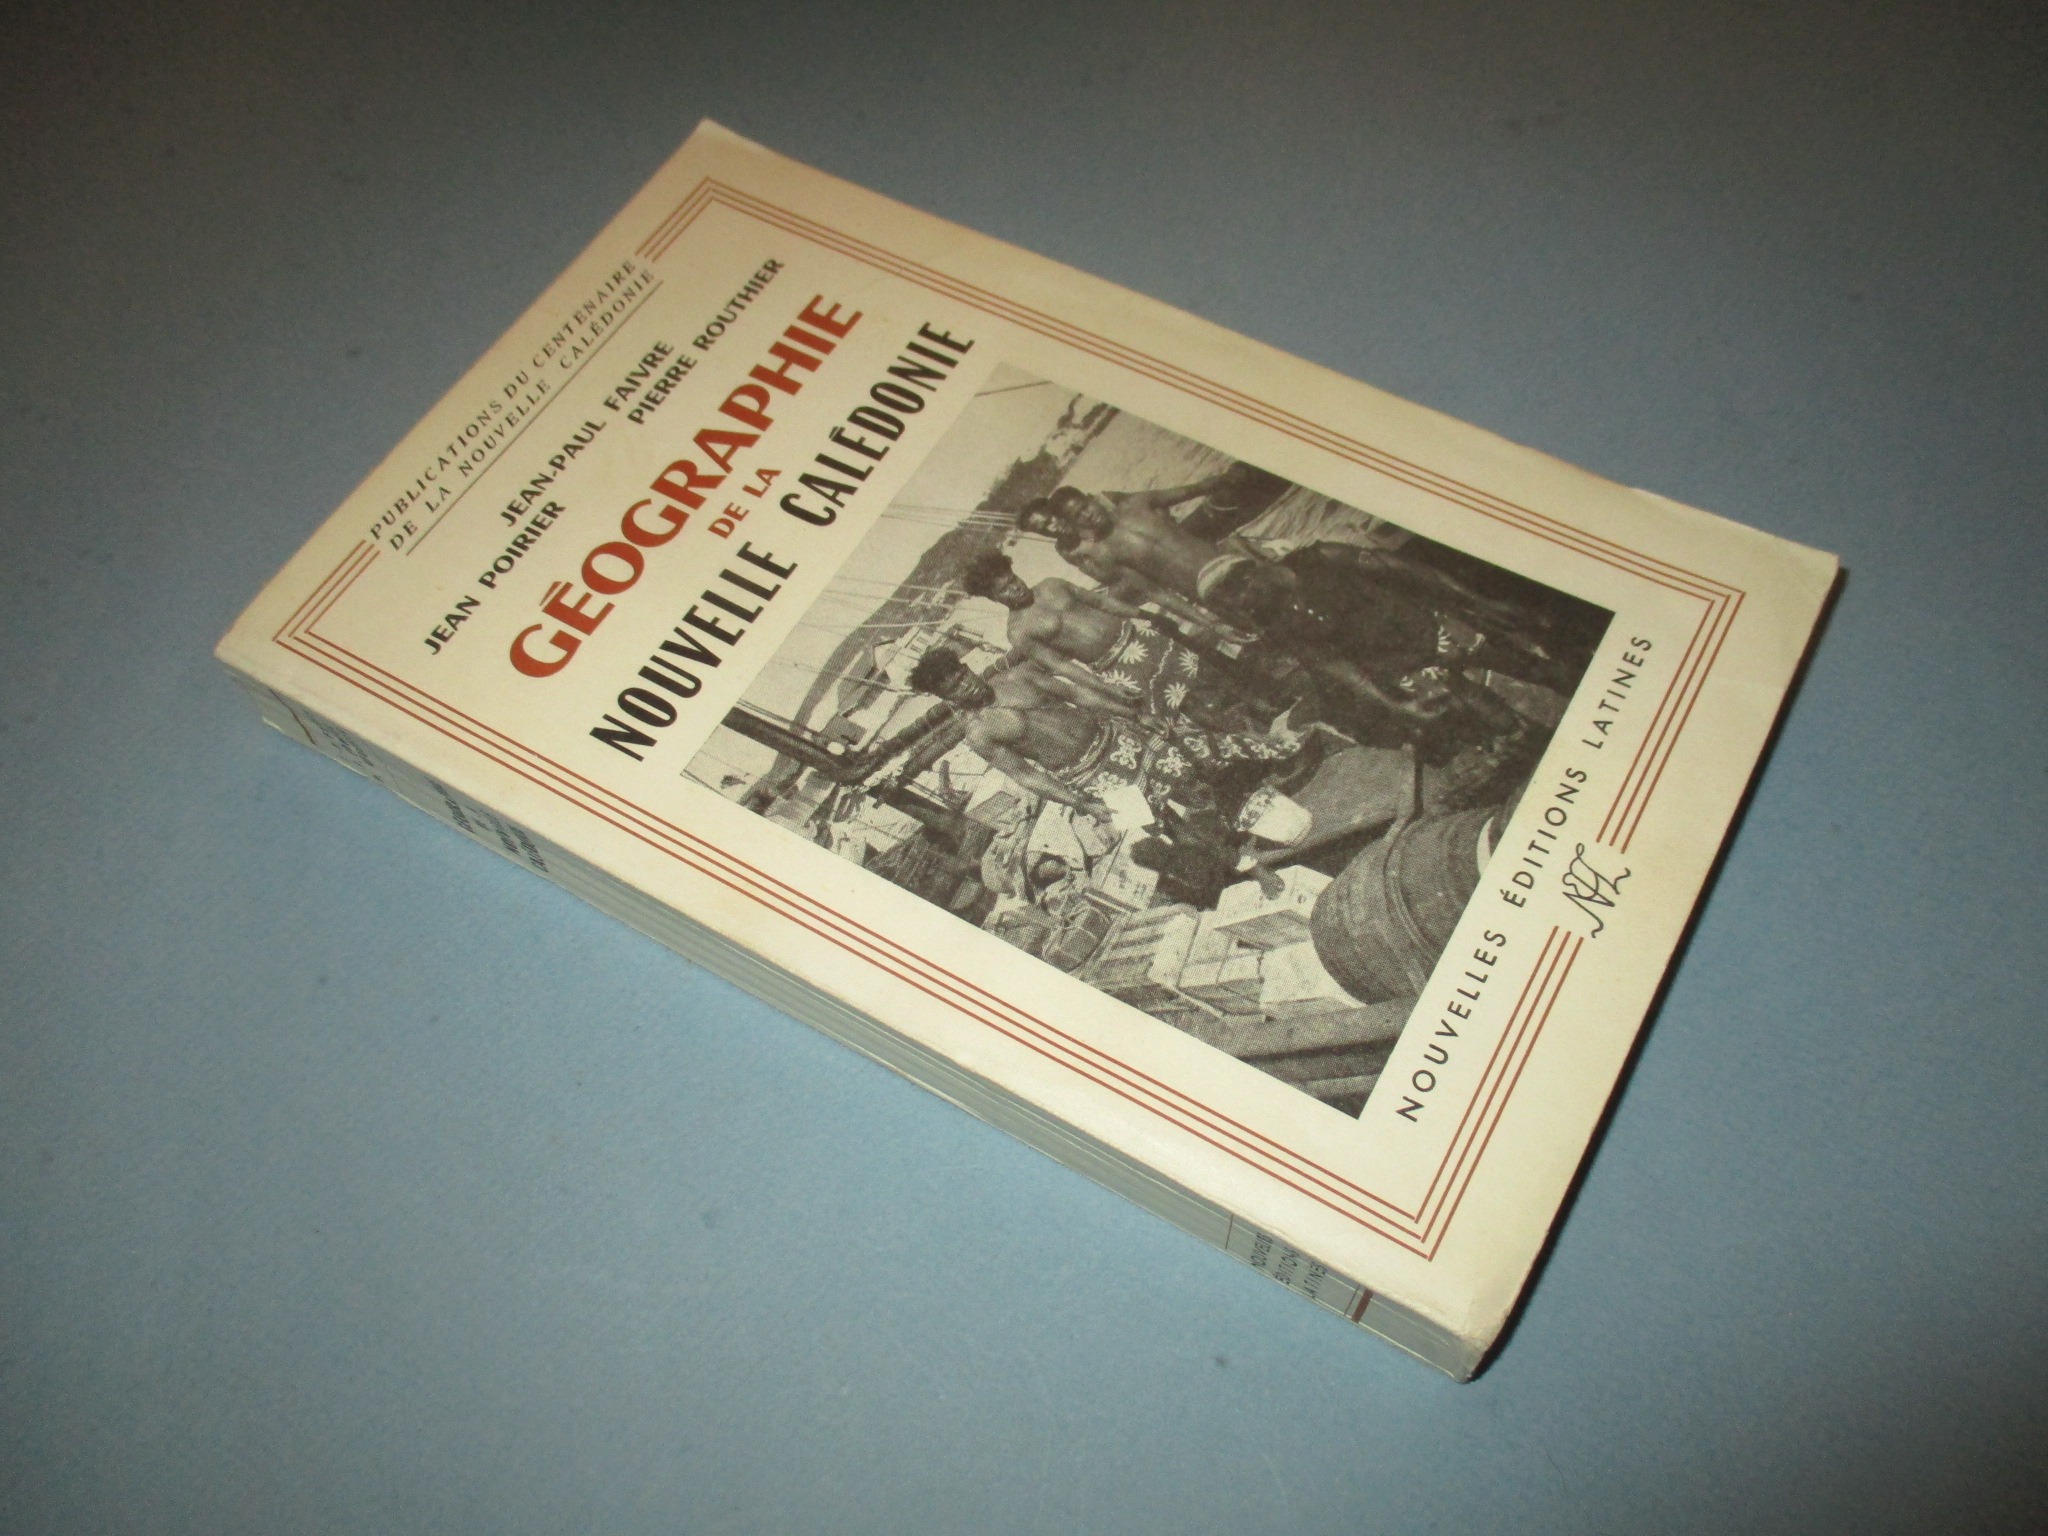 Géographie de la Nouvelle Calédonie, Faivre Poirier & Routhier, Nouvelles Editions Latines 1955